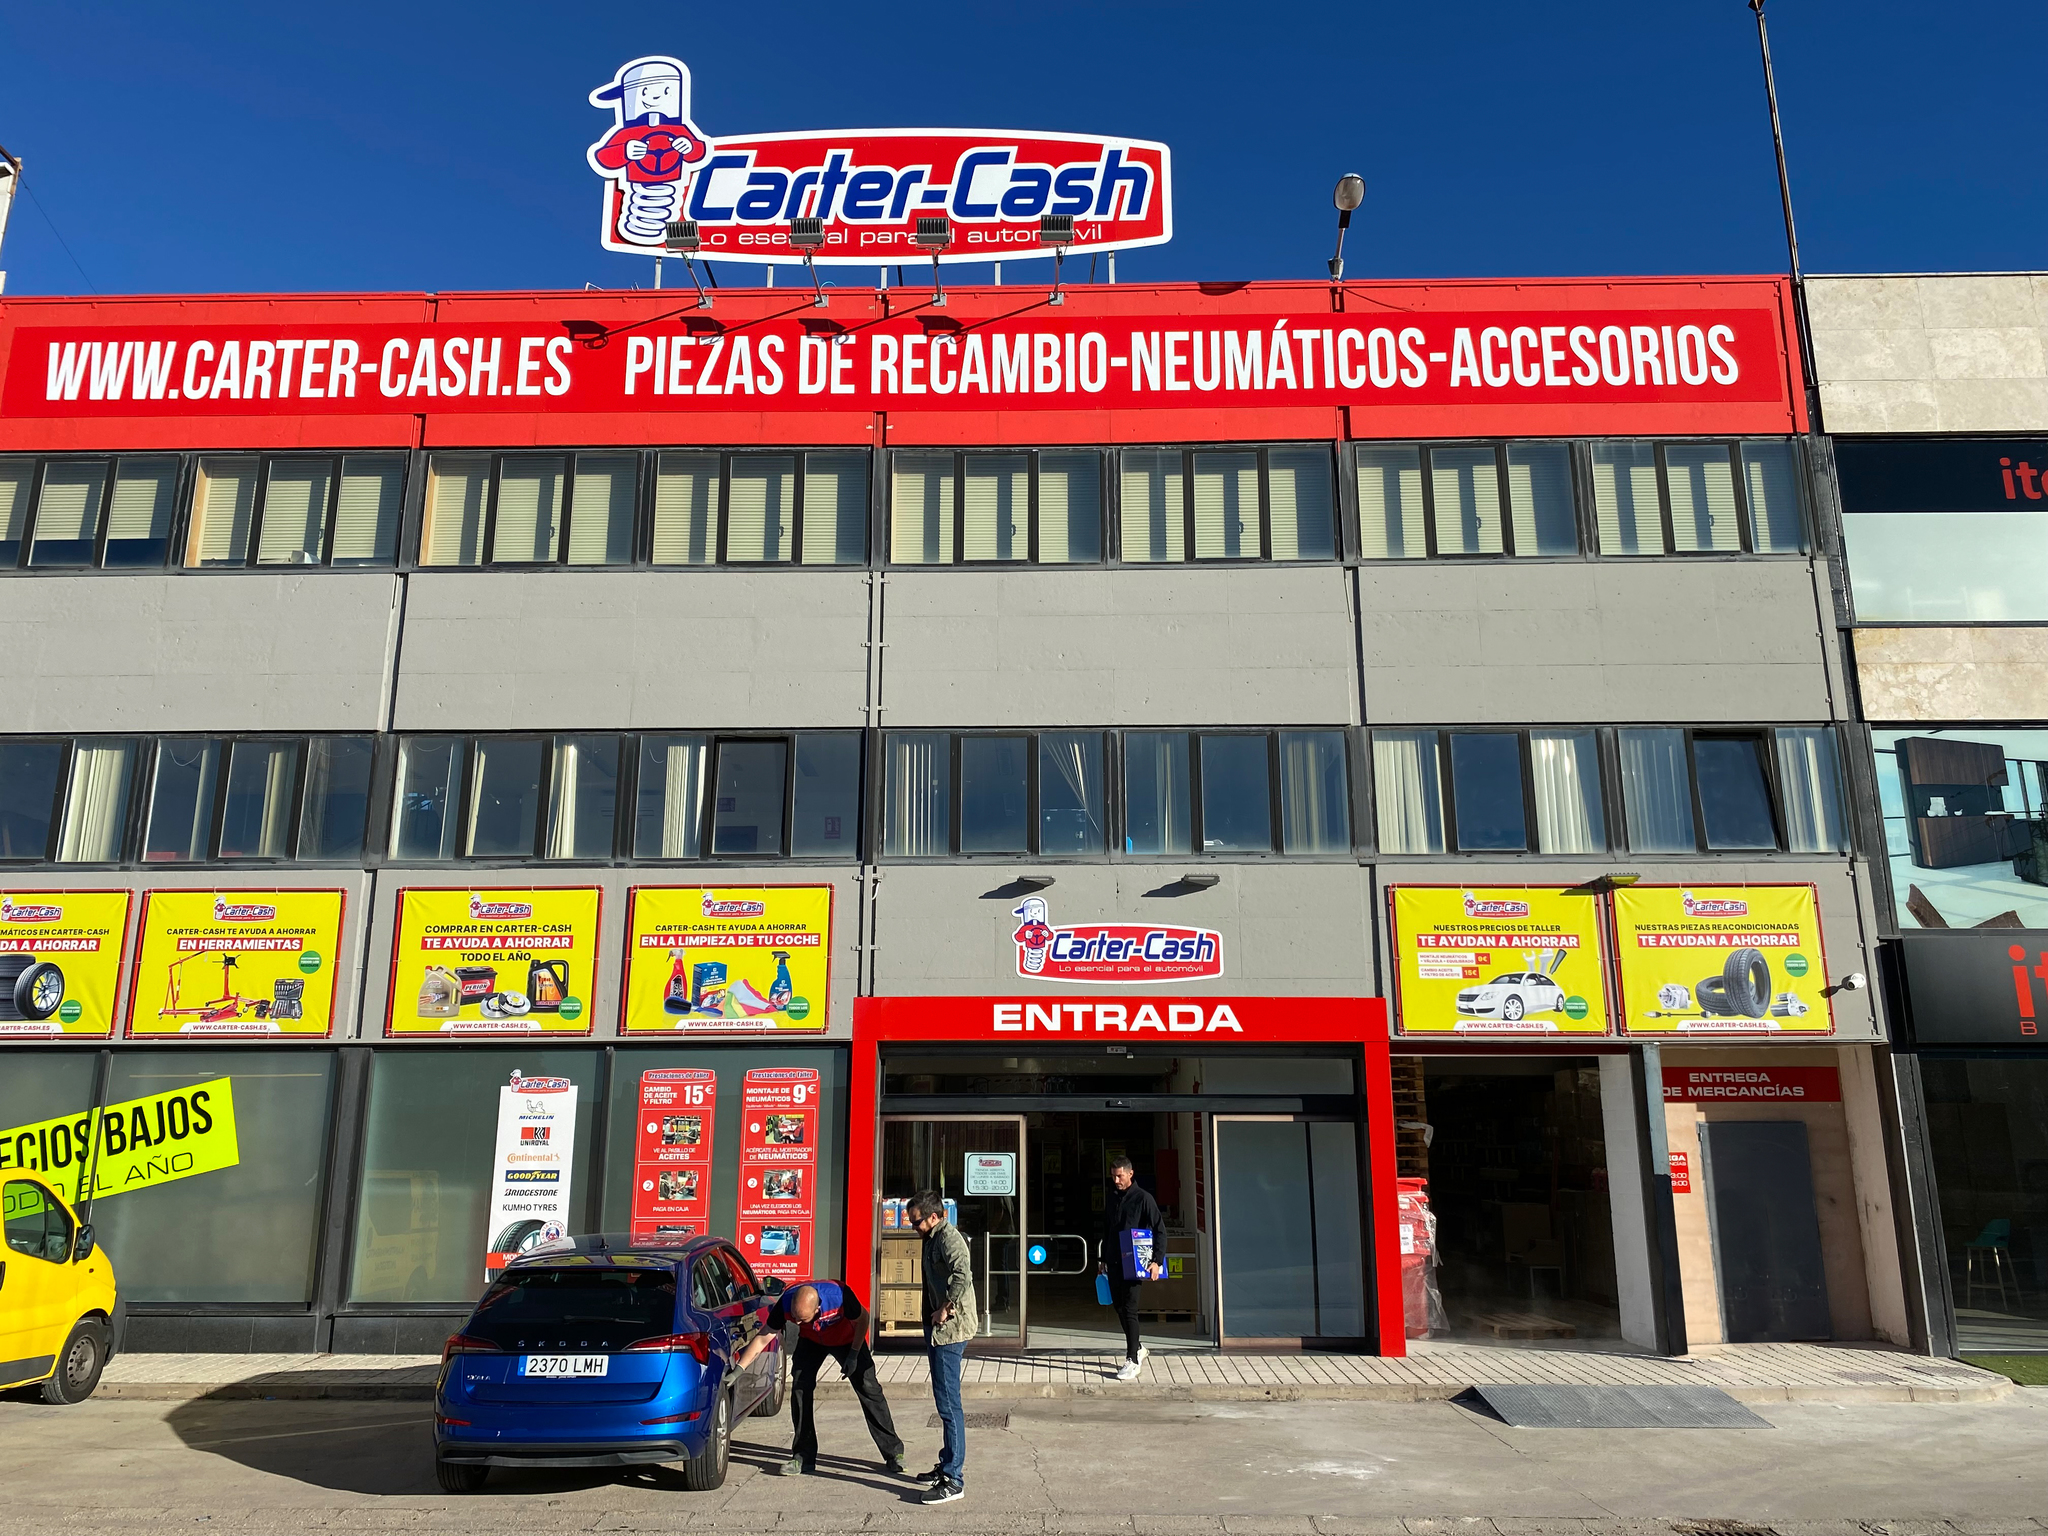 Carter-Cash ya dispone de nueve tiendas en España.